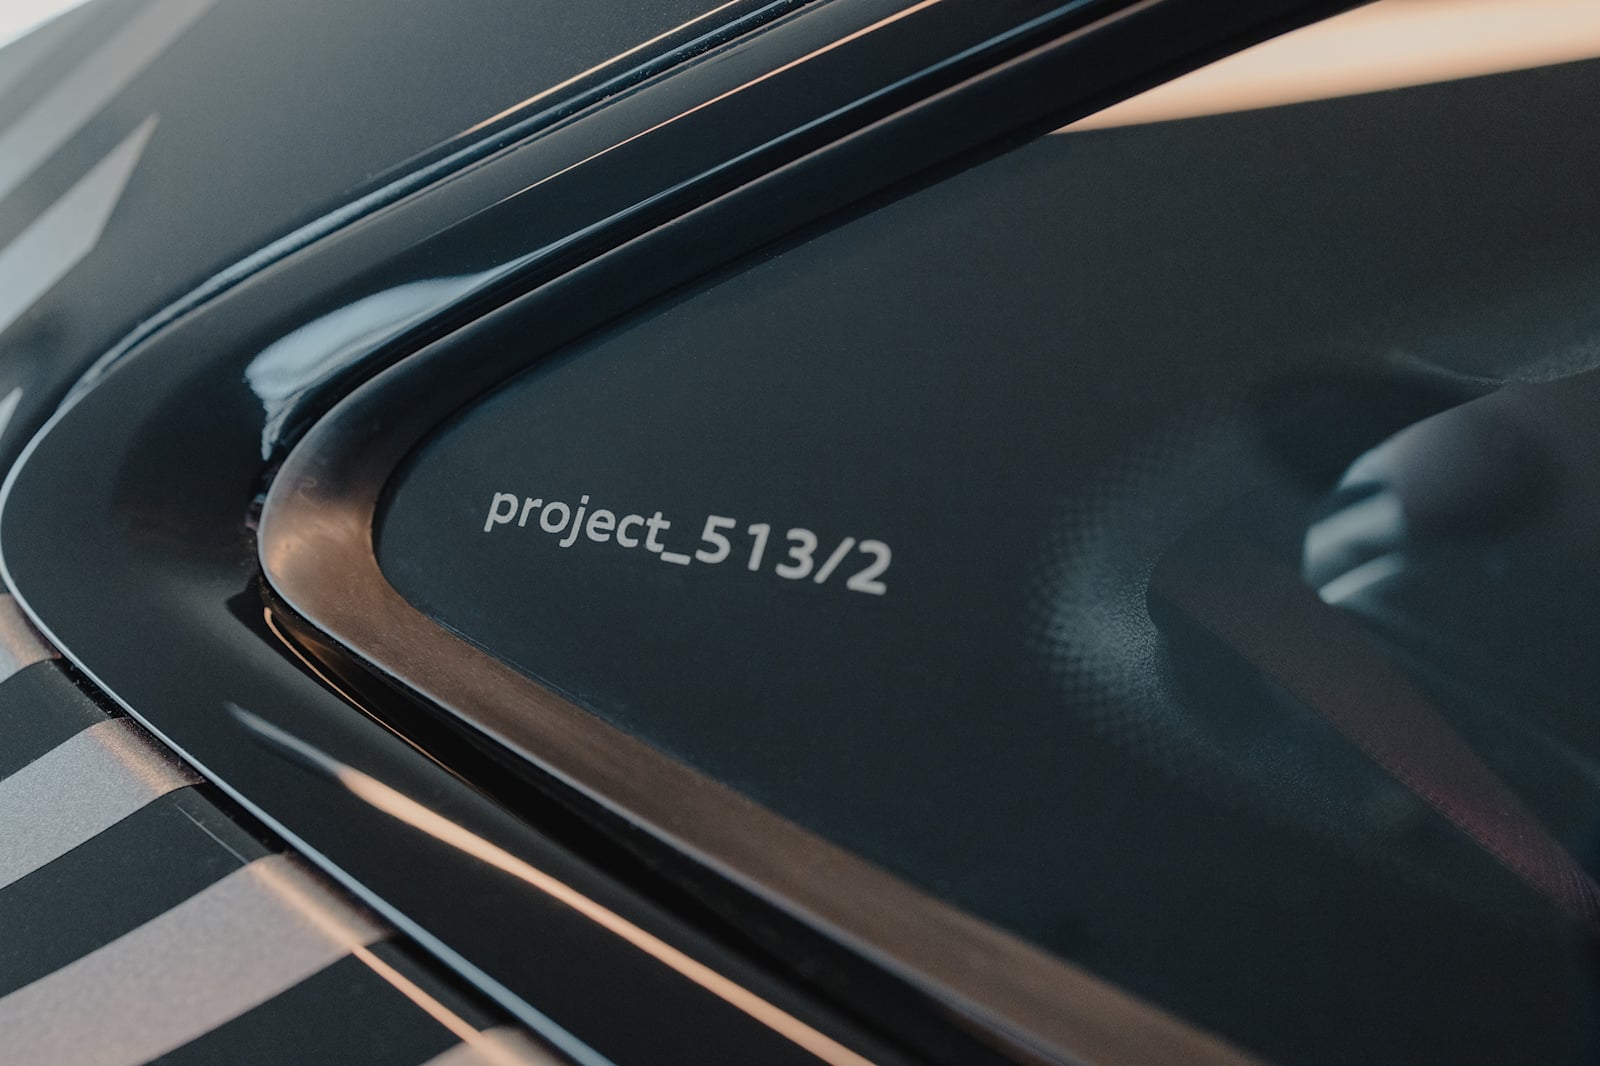 اودي Project_513/2 تنطلق رسمياً كواحدة من أقوى سيارات الدفع الخلفي بالعالم 8